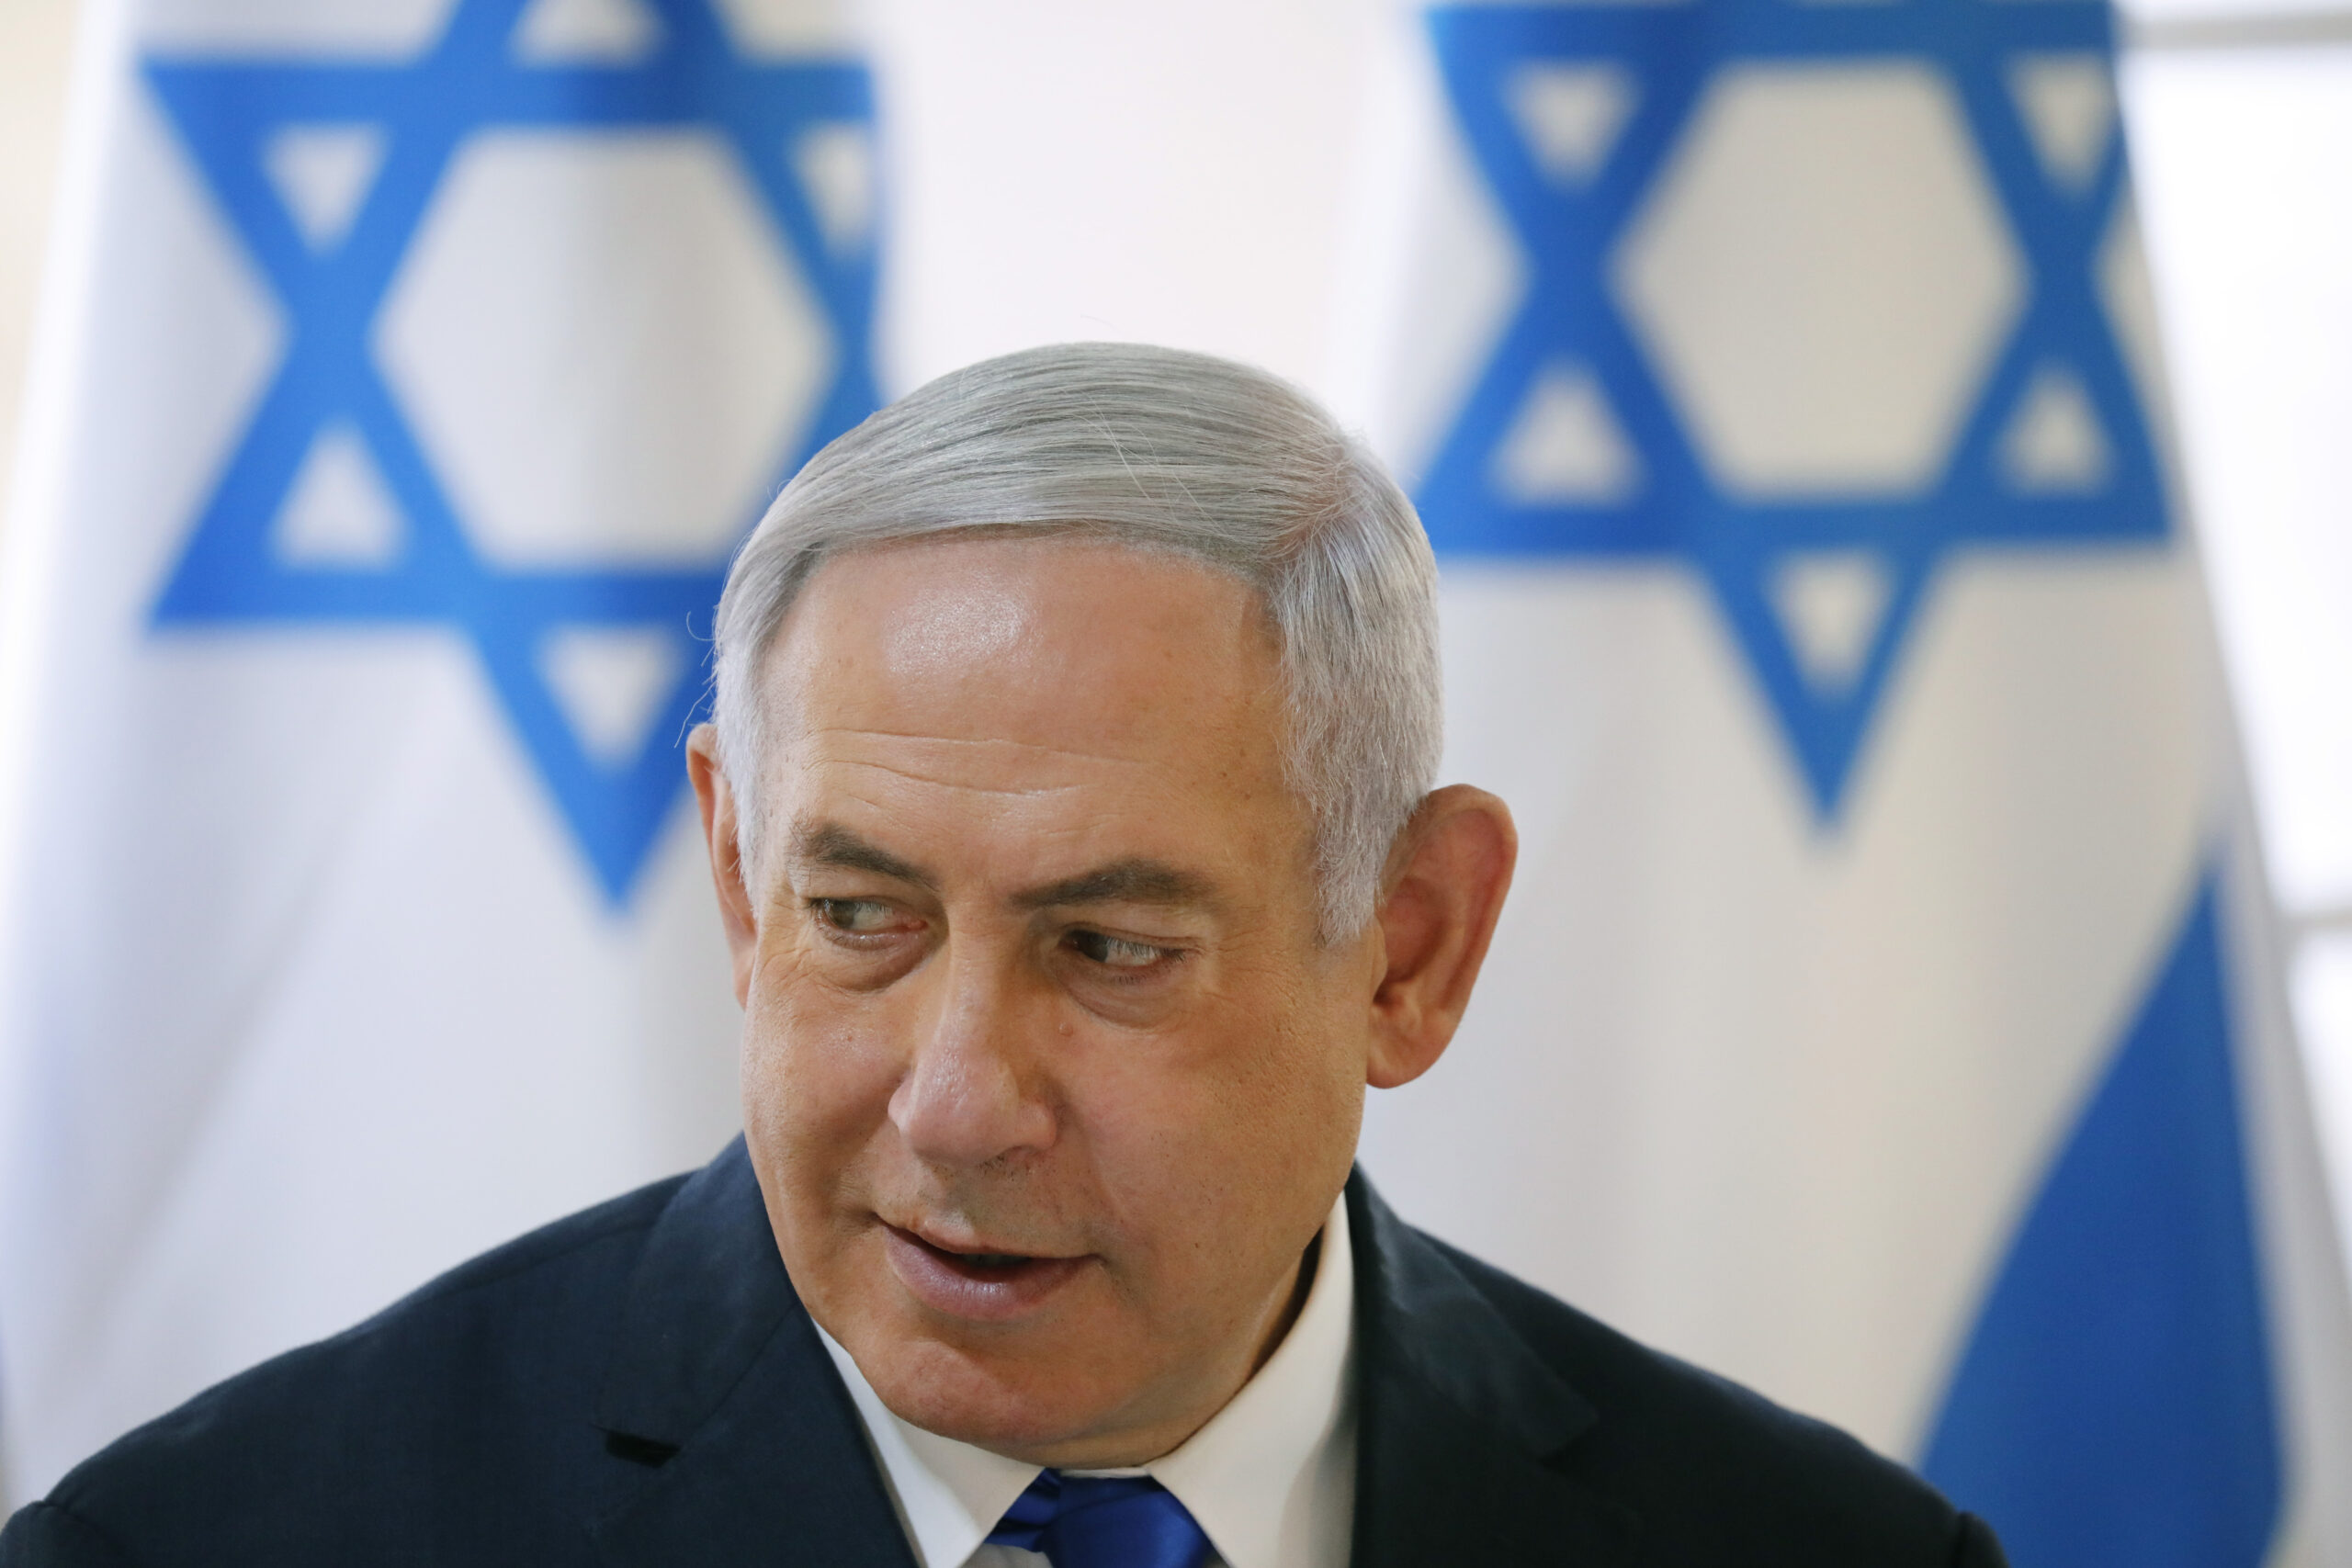 Η αποχή από την ψηφοφορία στο Σ.Α. έφερε την ακύρωση της επίσκεψης αντιπροσωπείας του Ισραήλ στις ΗΠΑ